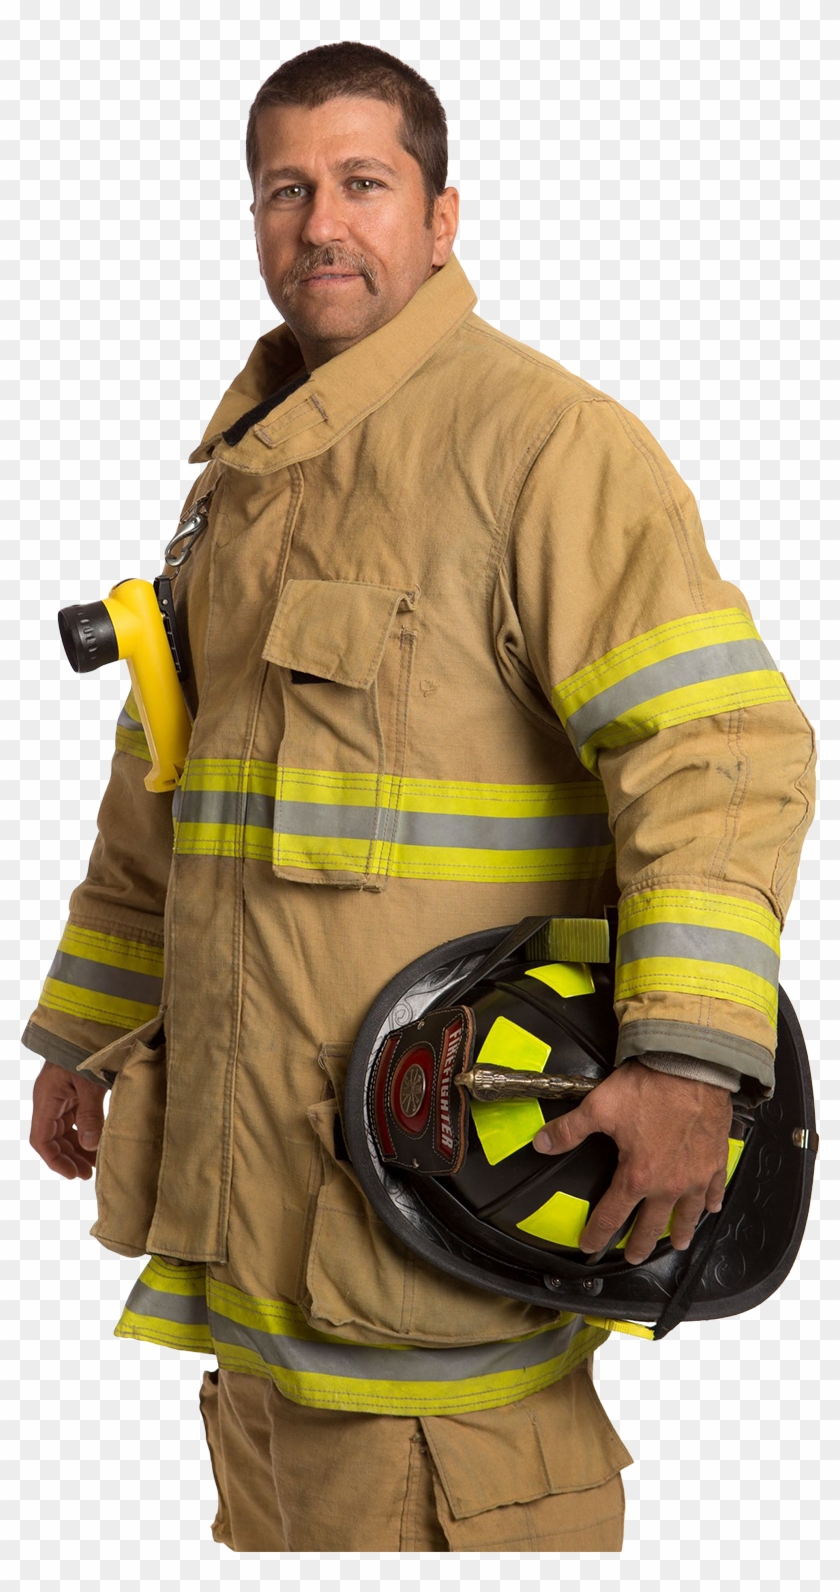 Uniform Of A Firefighter #396290